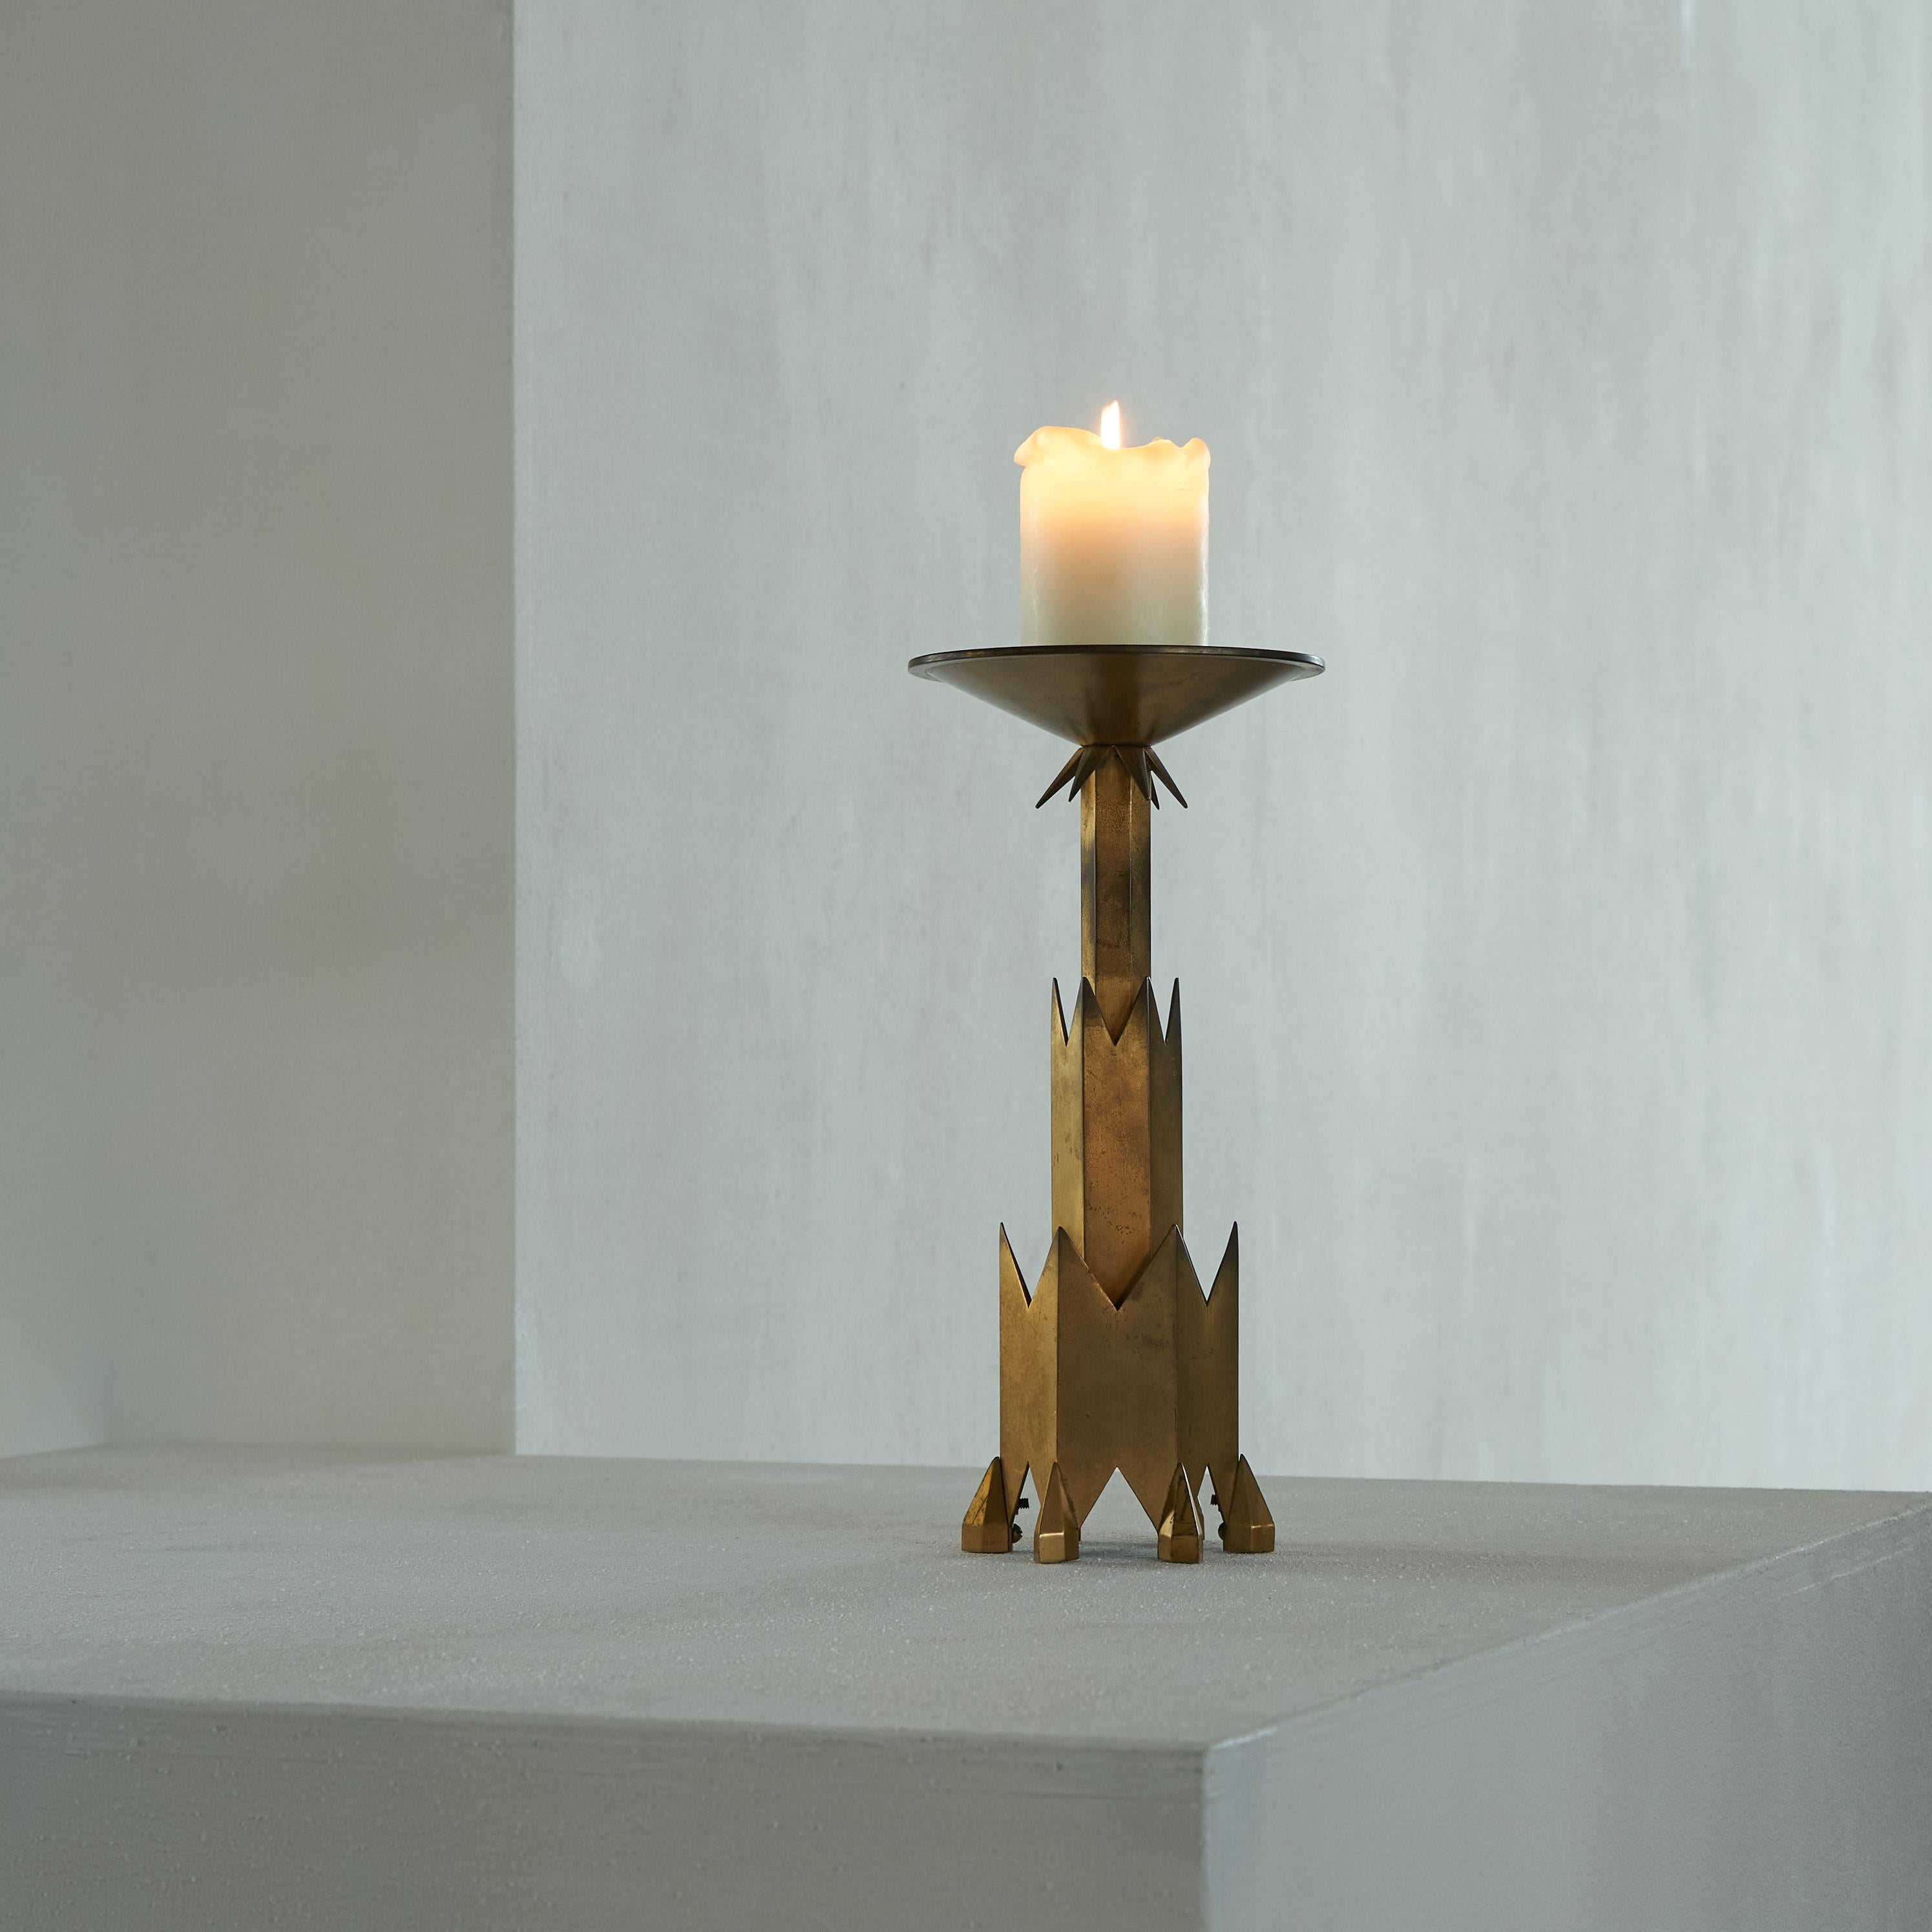 Bemerkenswerter Art-Déco-Kerzenhalter aus patiniertem Messing, erste Hälfte des 20. Jahrhunderts.

Ein schöner und großer Kerzenhalter mit bemerkenswertem Art-Déco-Design. Dieser Kerzenhalter ist ein wunderschönes Stück Art-Deco-Design. Scharf und